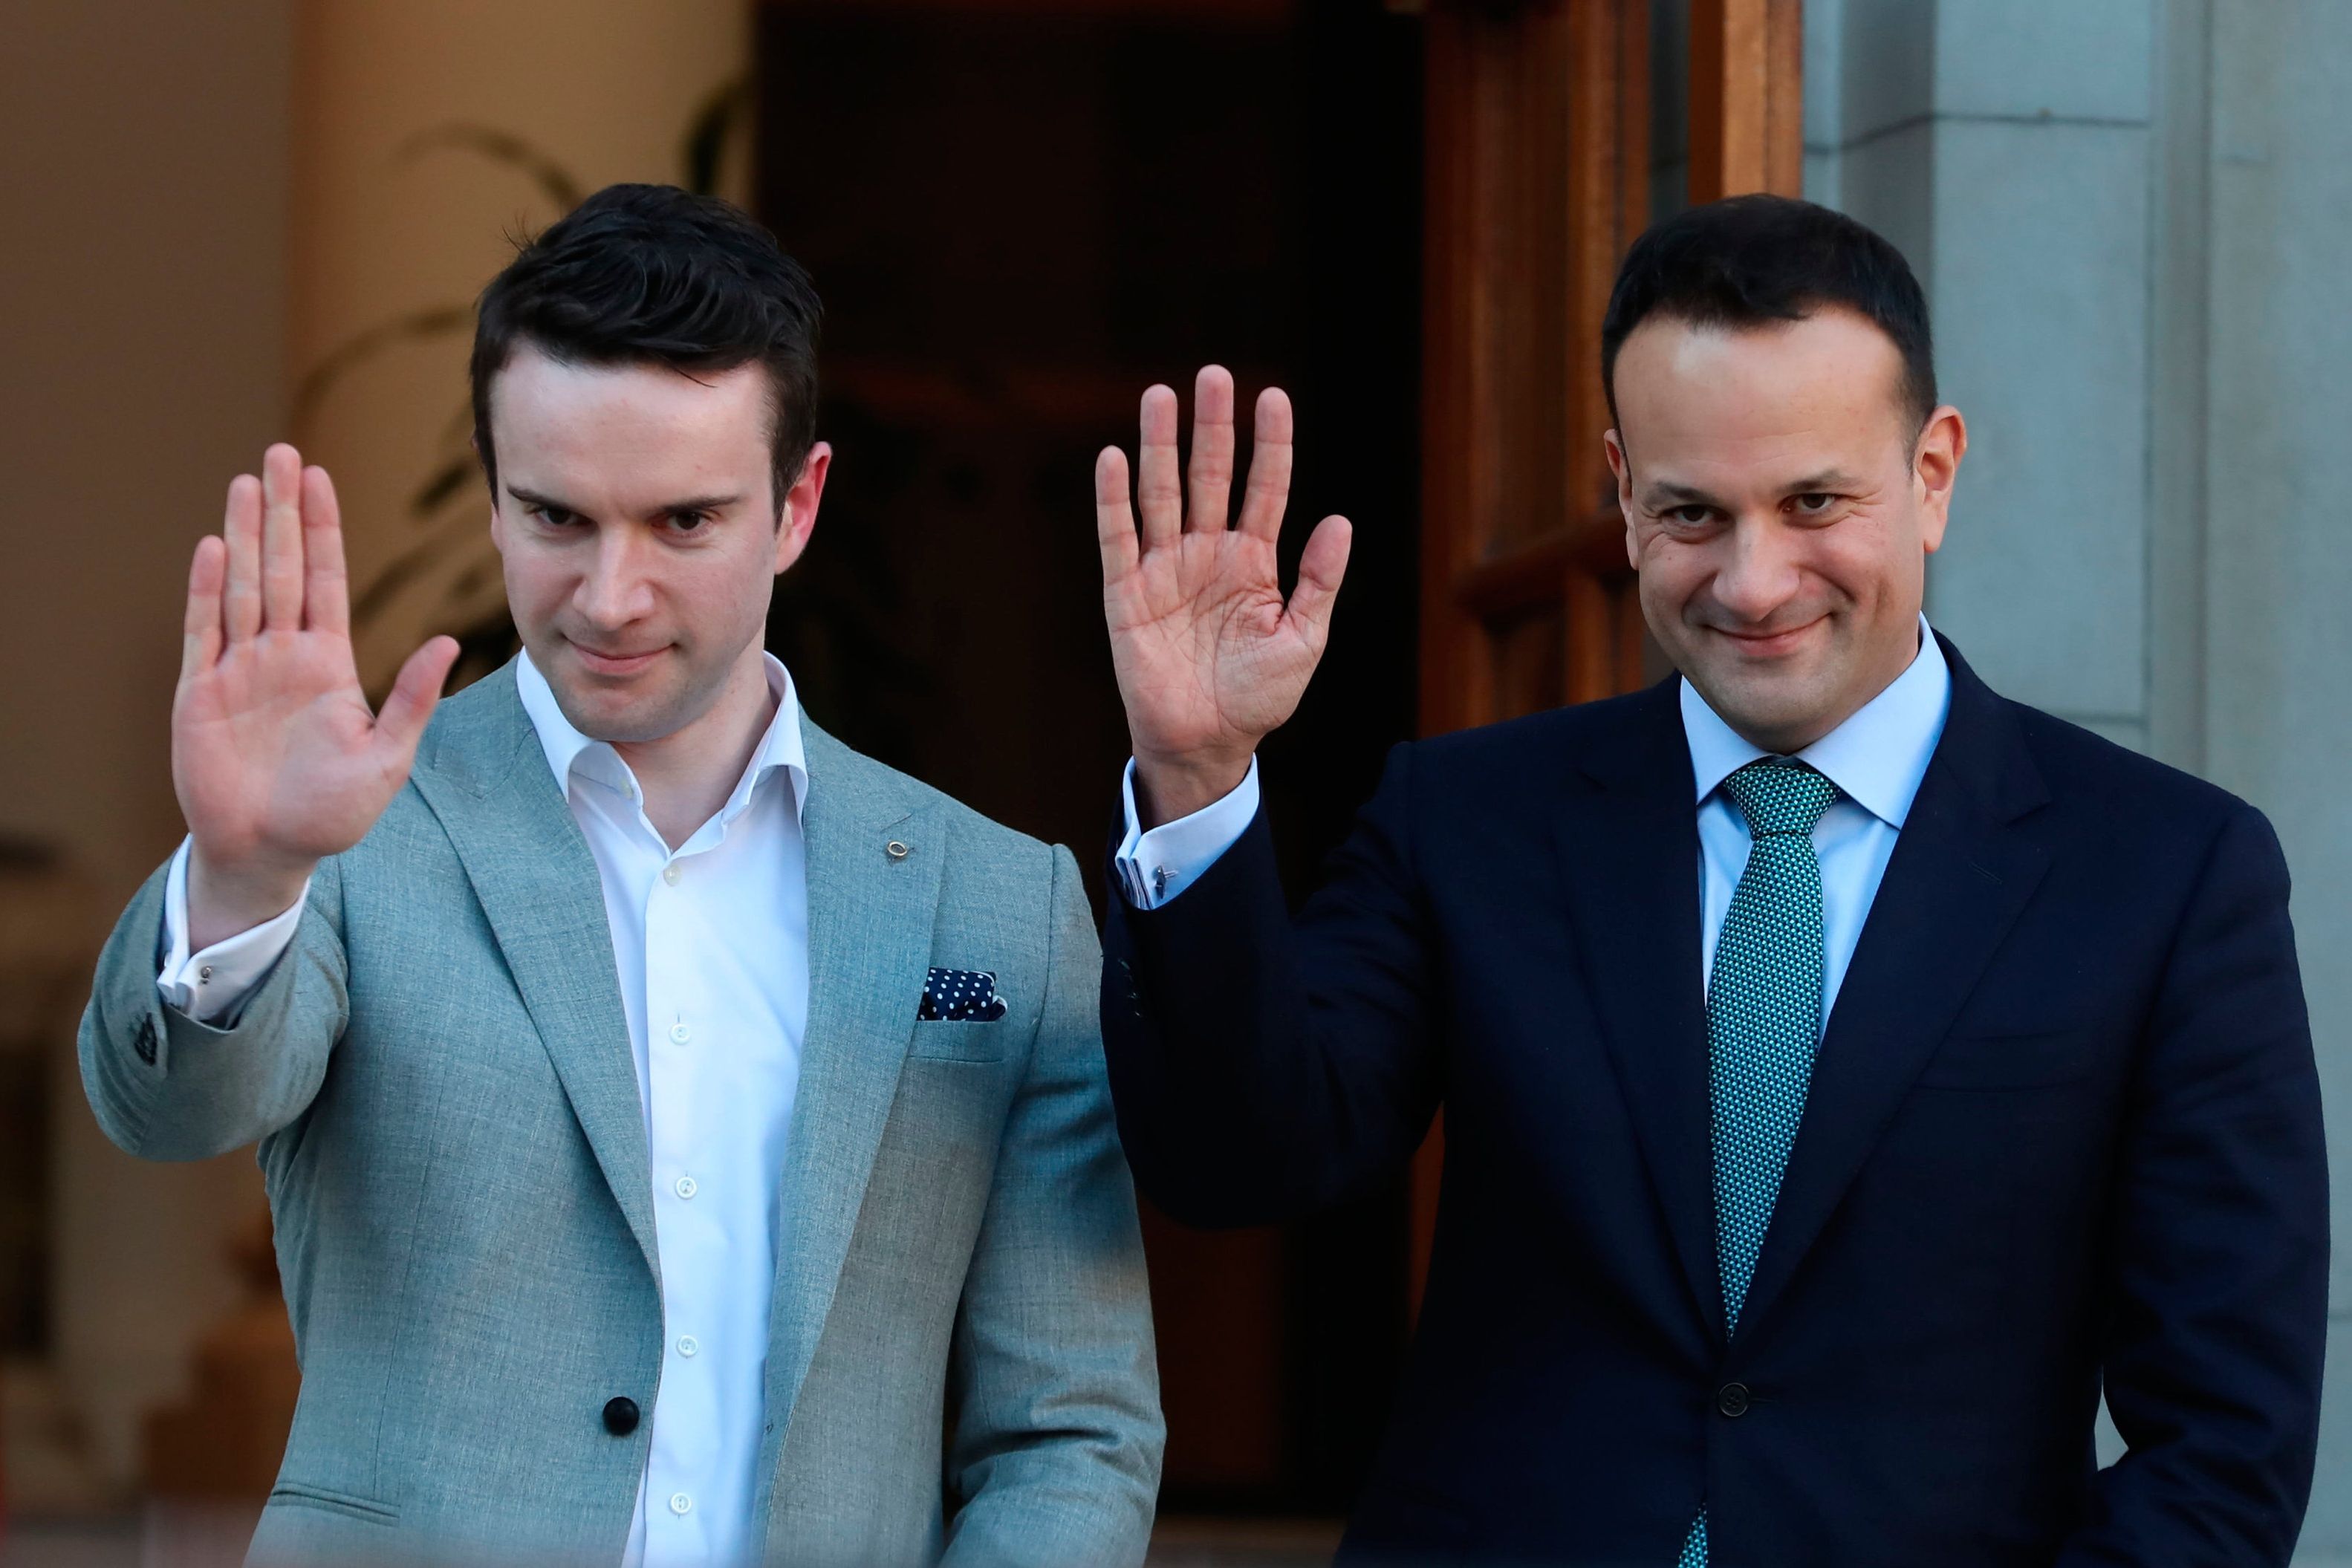 Taoiseach настаивает на том, чтобы партнеру Мэтту Барретту не запретили зарубежные поездки после «неуважительных» комментариев о коронации